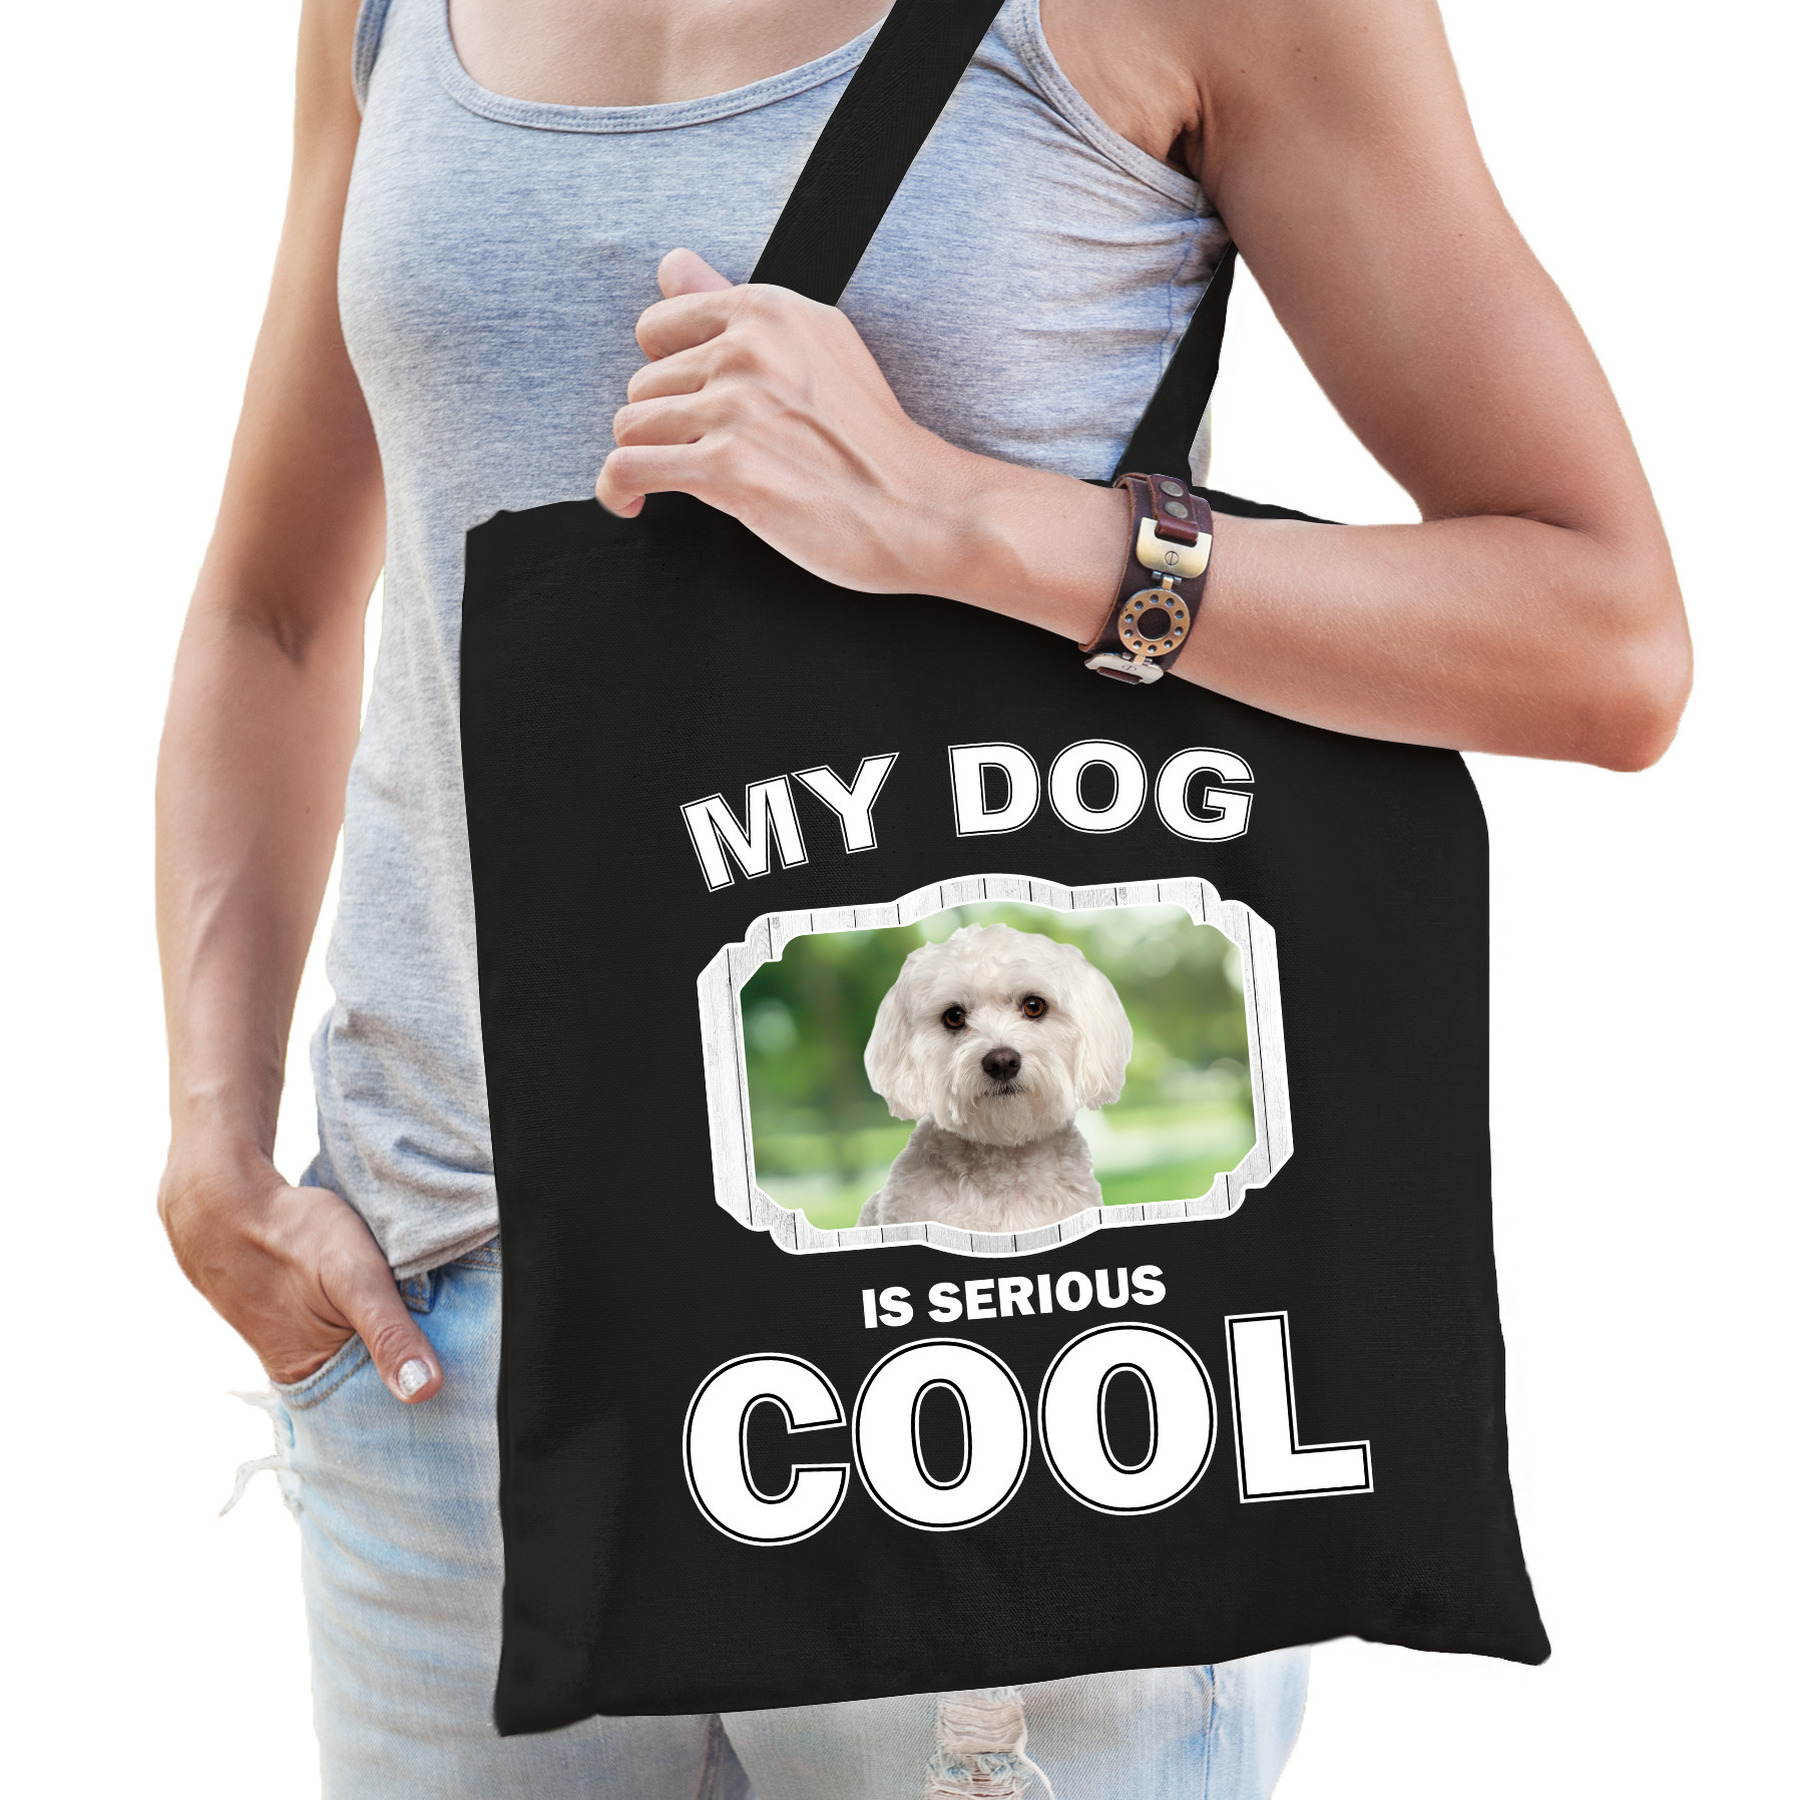 Maltezer honden tasje zwart volwassenen en kinderen my dog serious is cool kado boodschappentasje